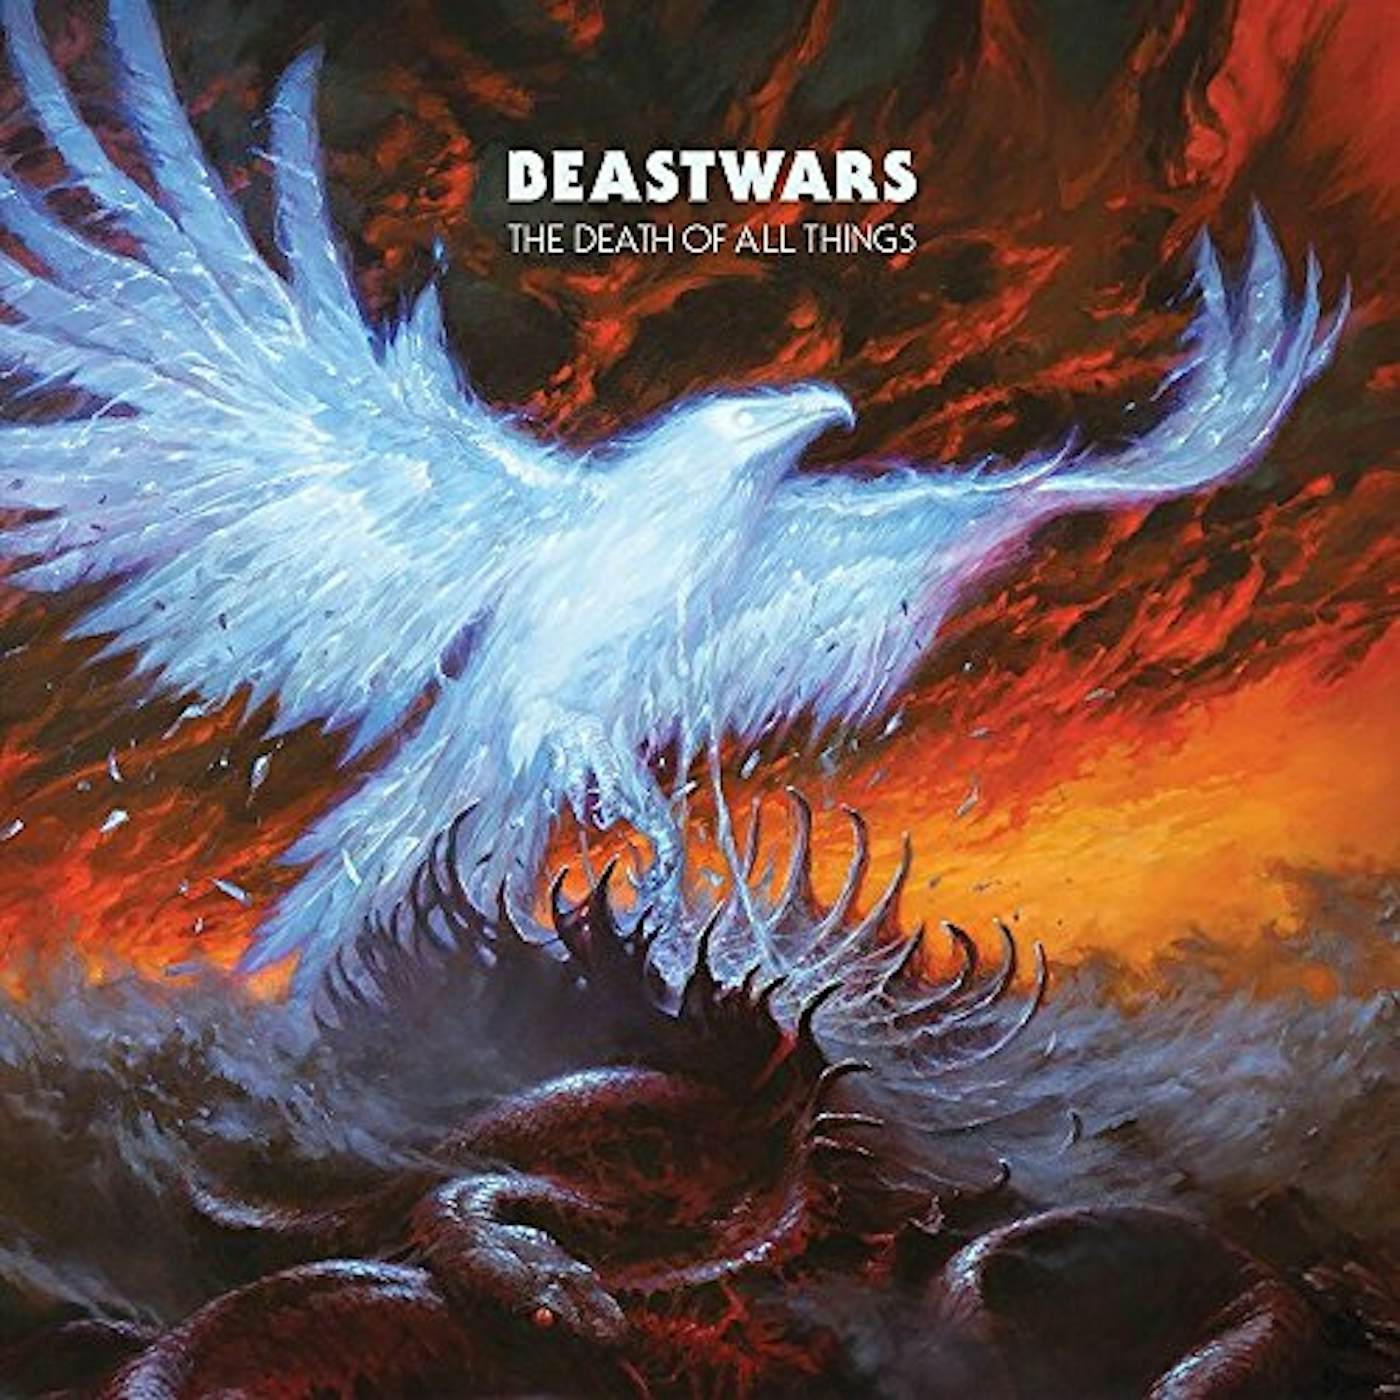 Beastwars DEATH OF ALL THINGS Vinyl Record